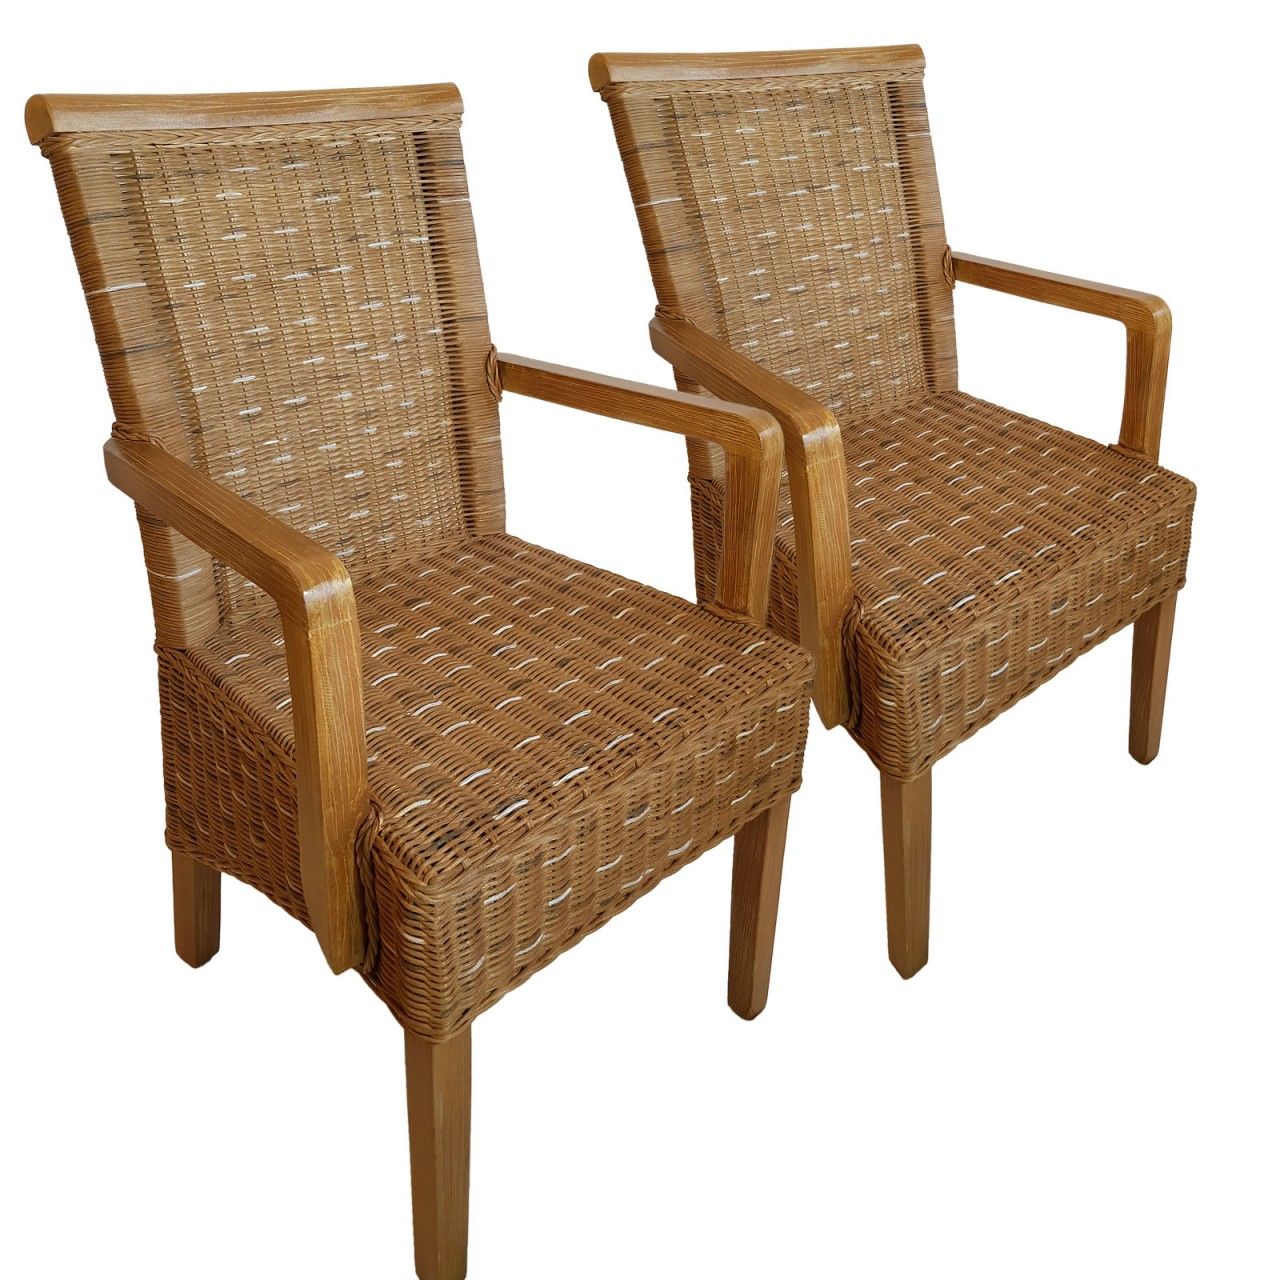 Esszimmer Stühle Set mit Armlehnen 2 Stück Rattanstuhl Perth capuccino Korbstuhl Sessel nachhaltig ohne Sitzkissen